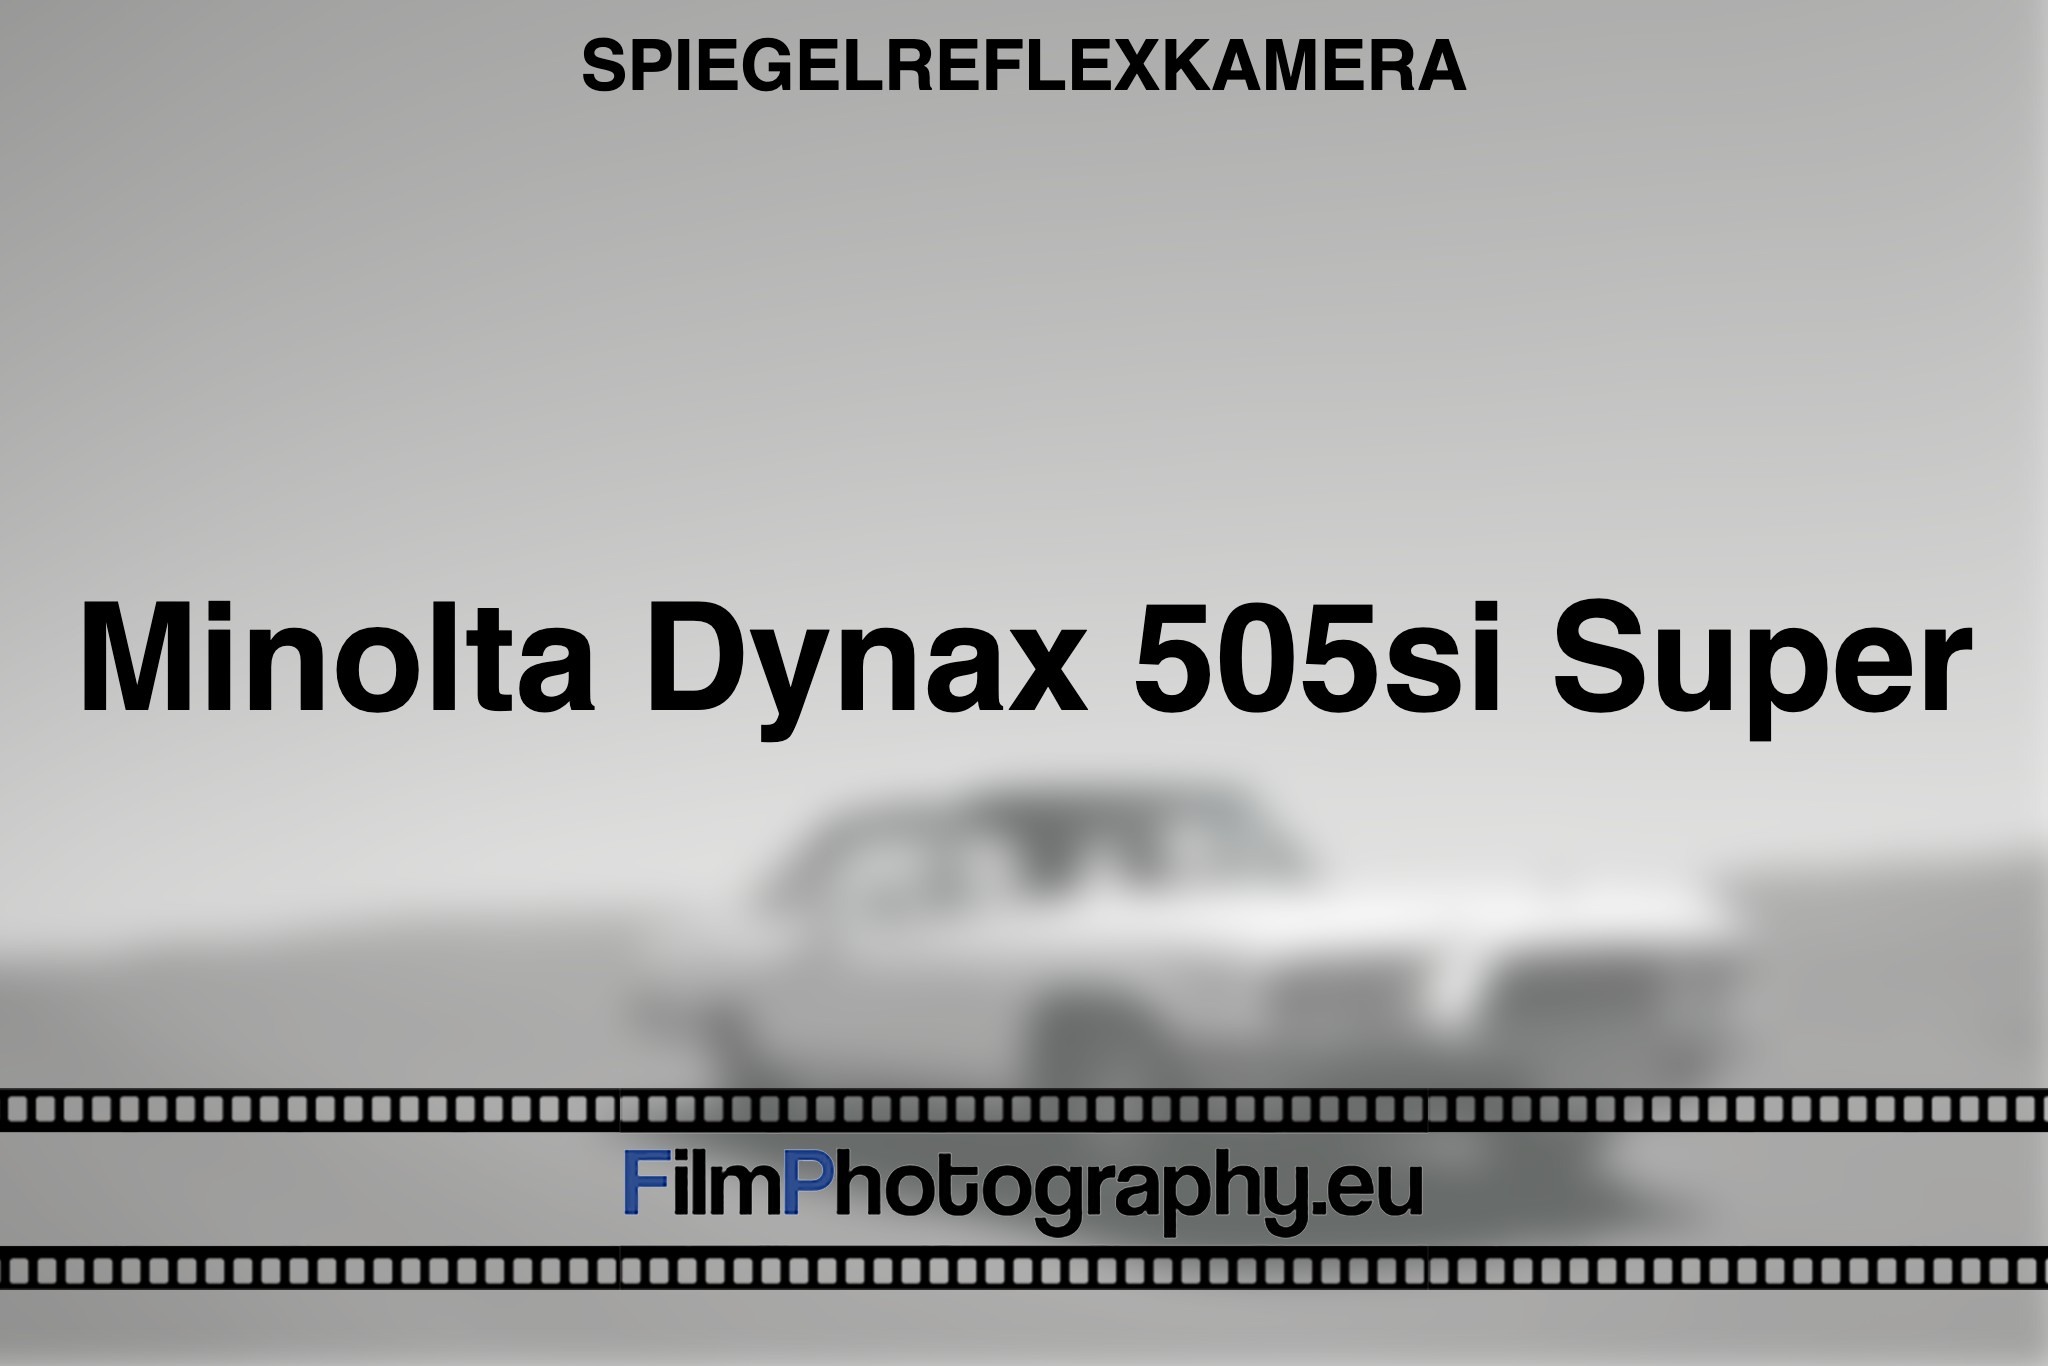 minolta-dynax-505si-super-spiegelreflexkamera-bnv